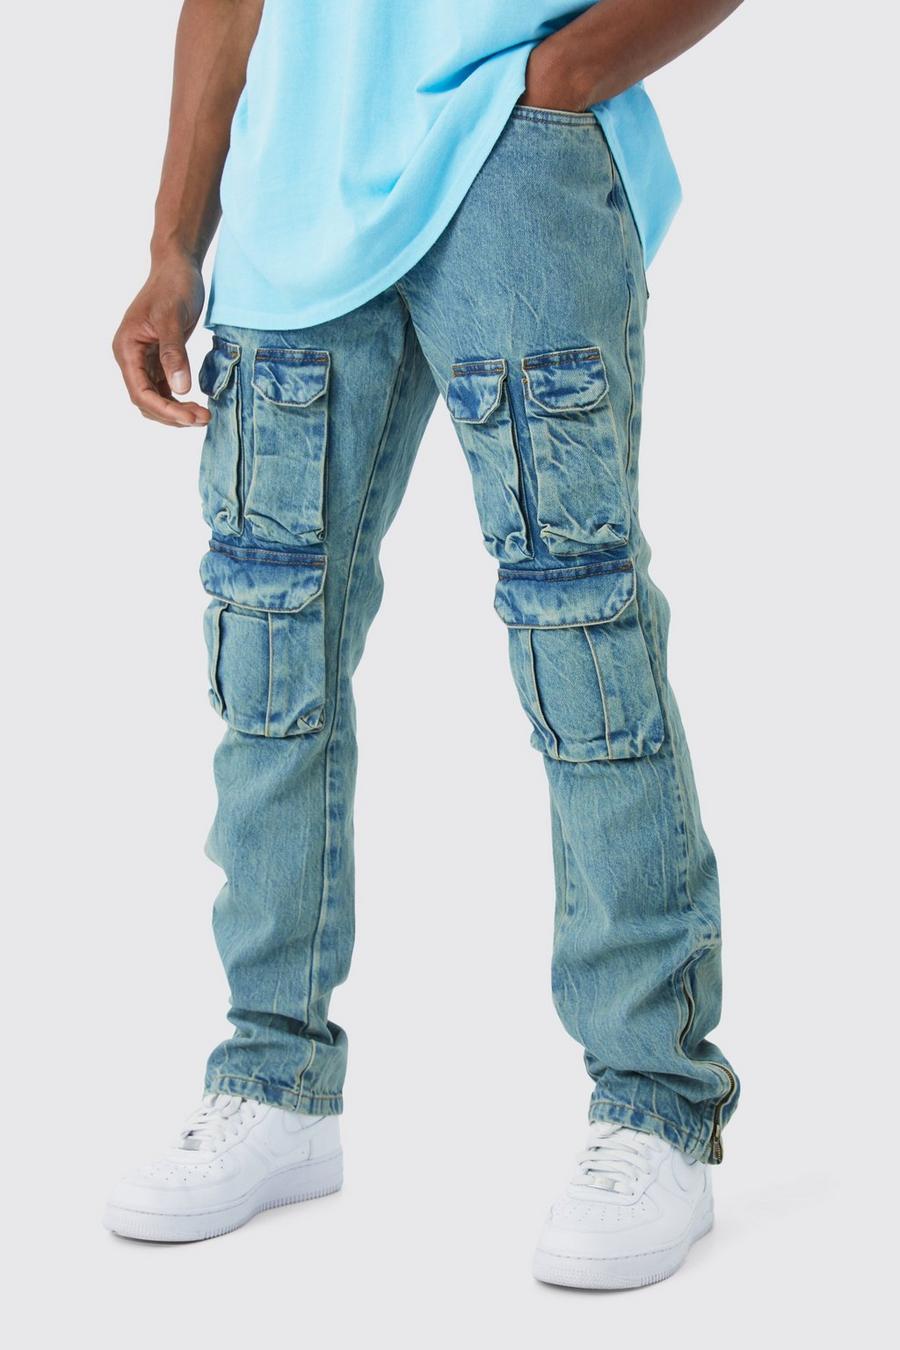 Jeans Cargo a zampa Slim Fit in denim rigido slavato con zip e inserti, Antique blue